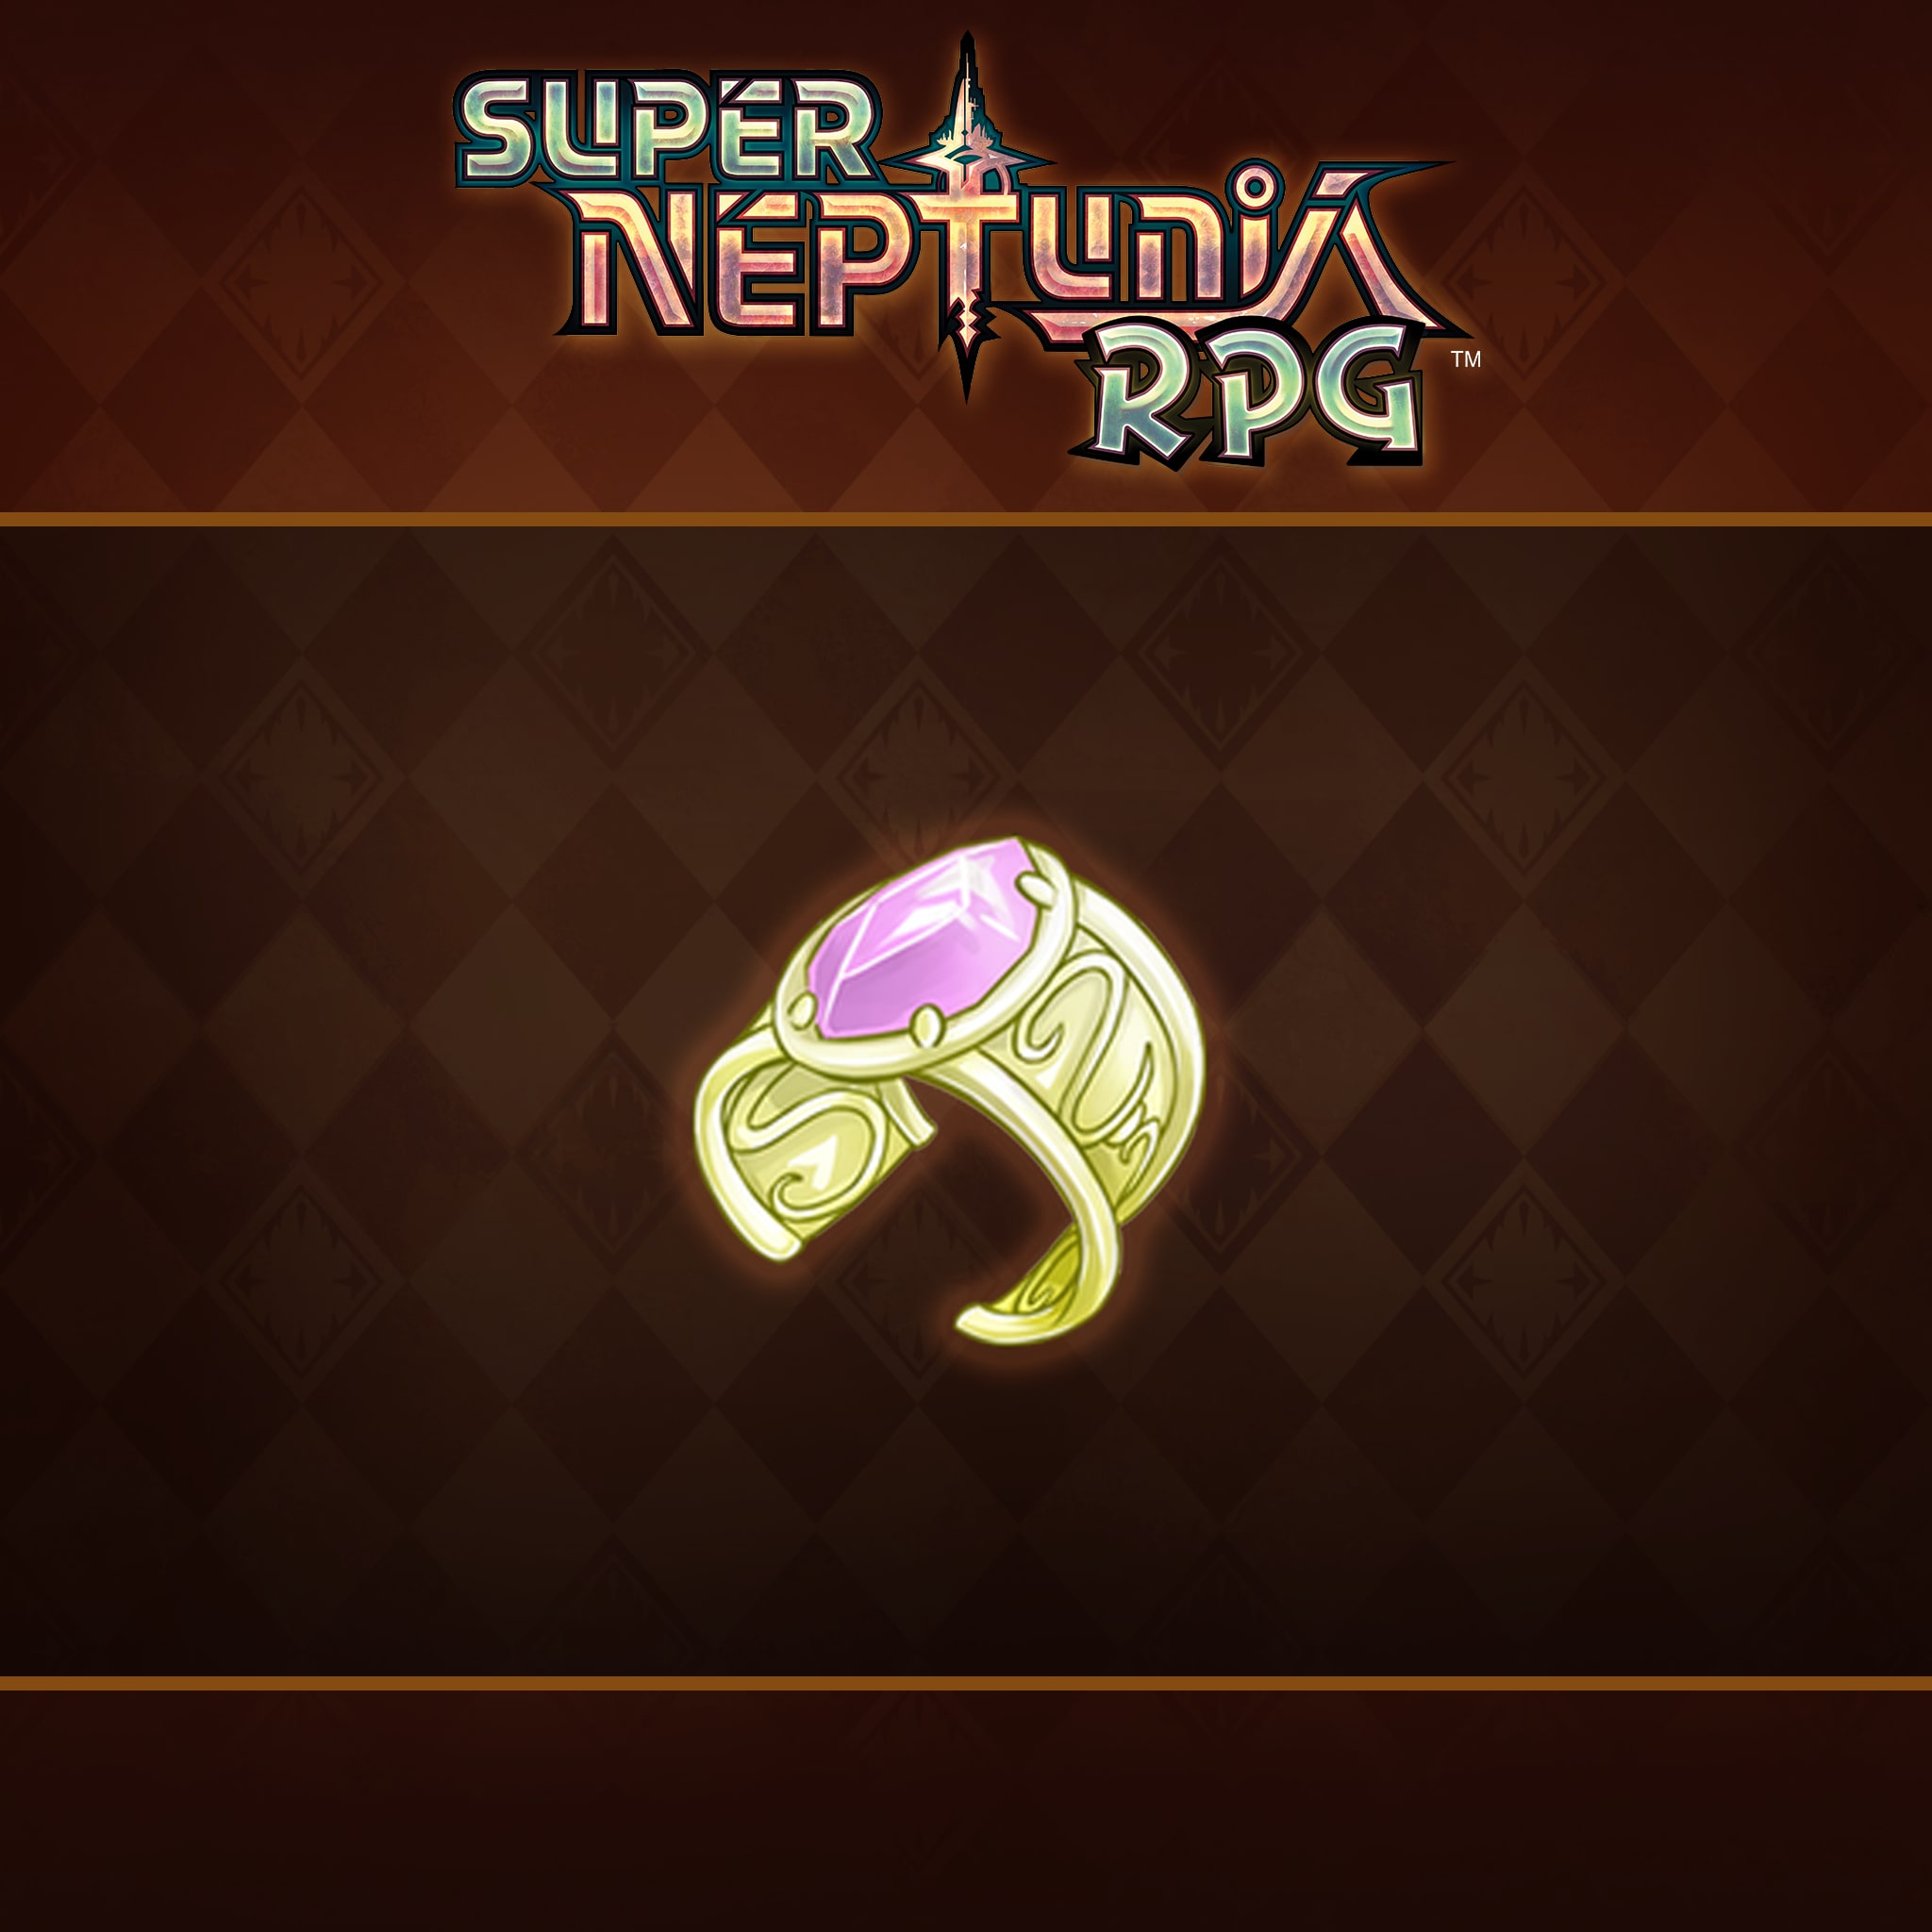 Super Neptunia RPG - Dengeki Bracelet Set